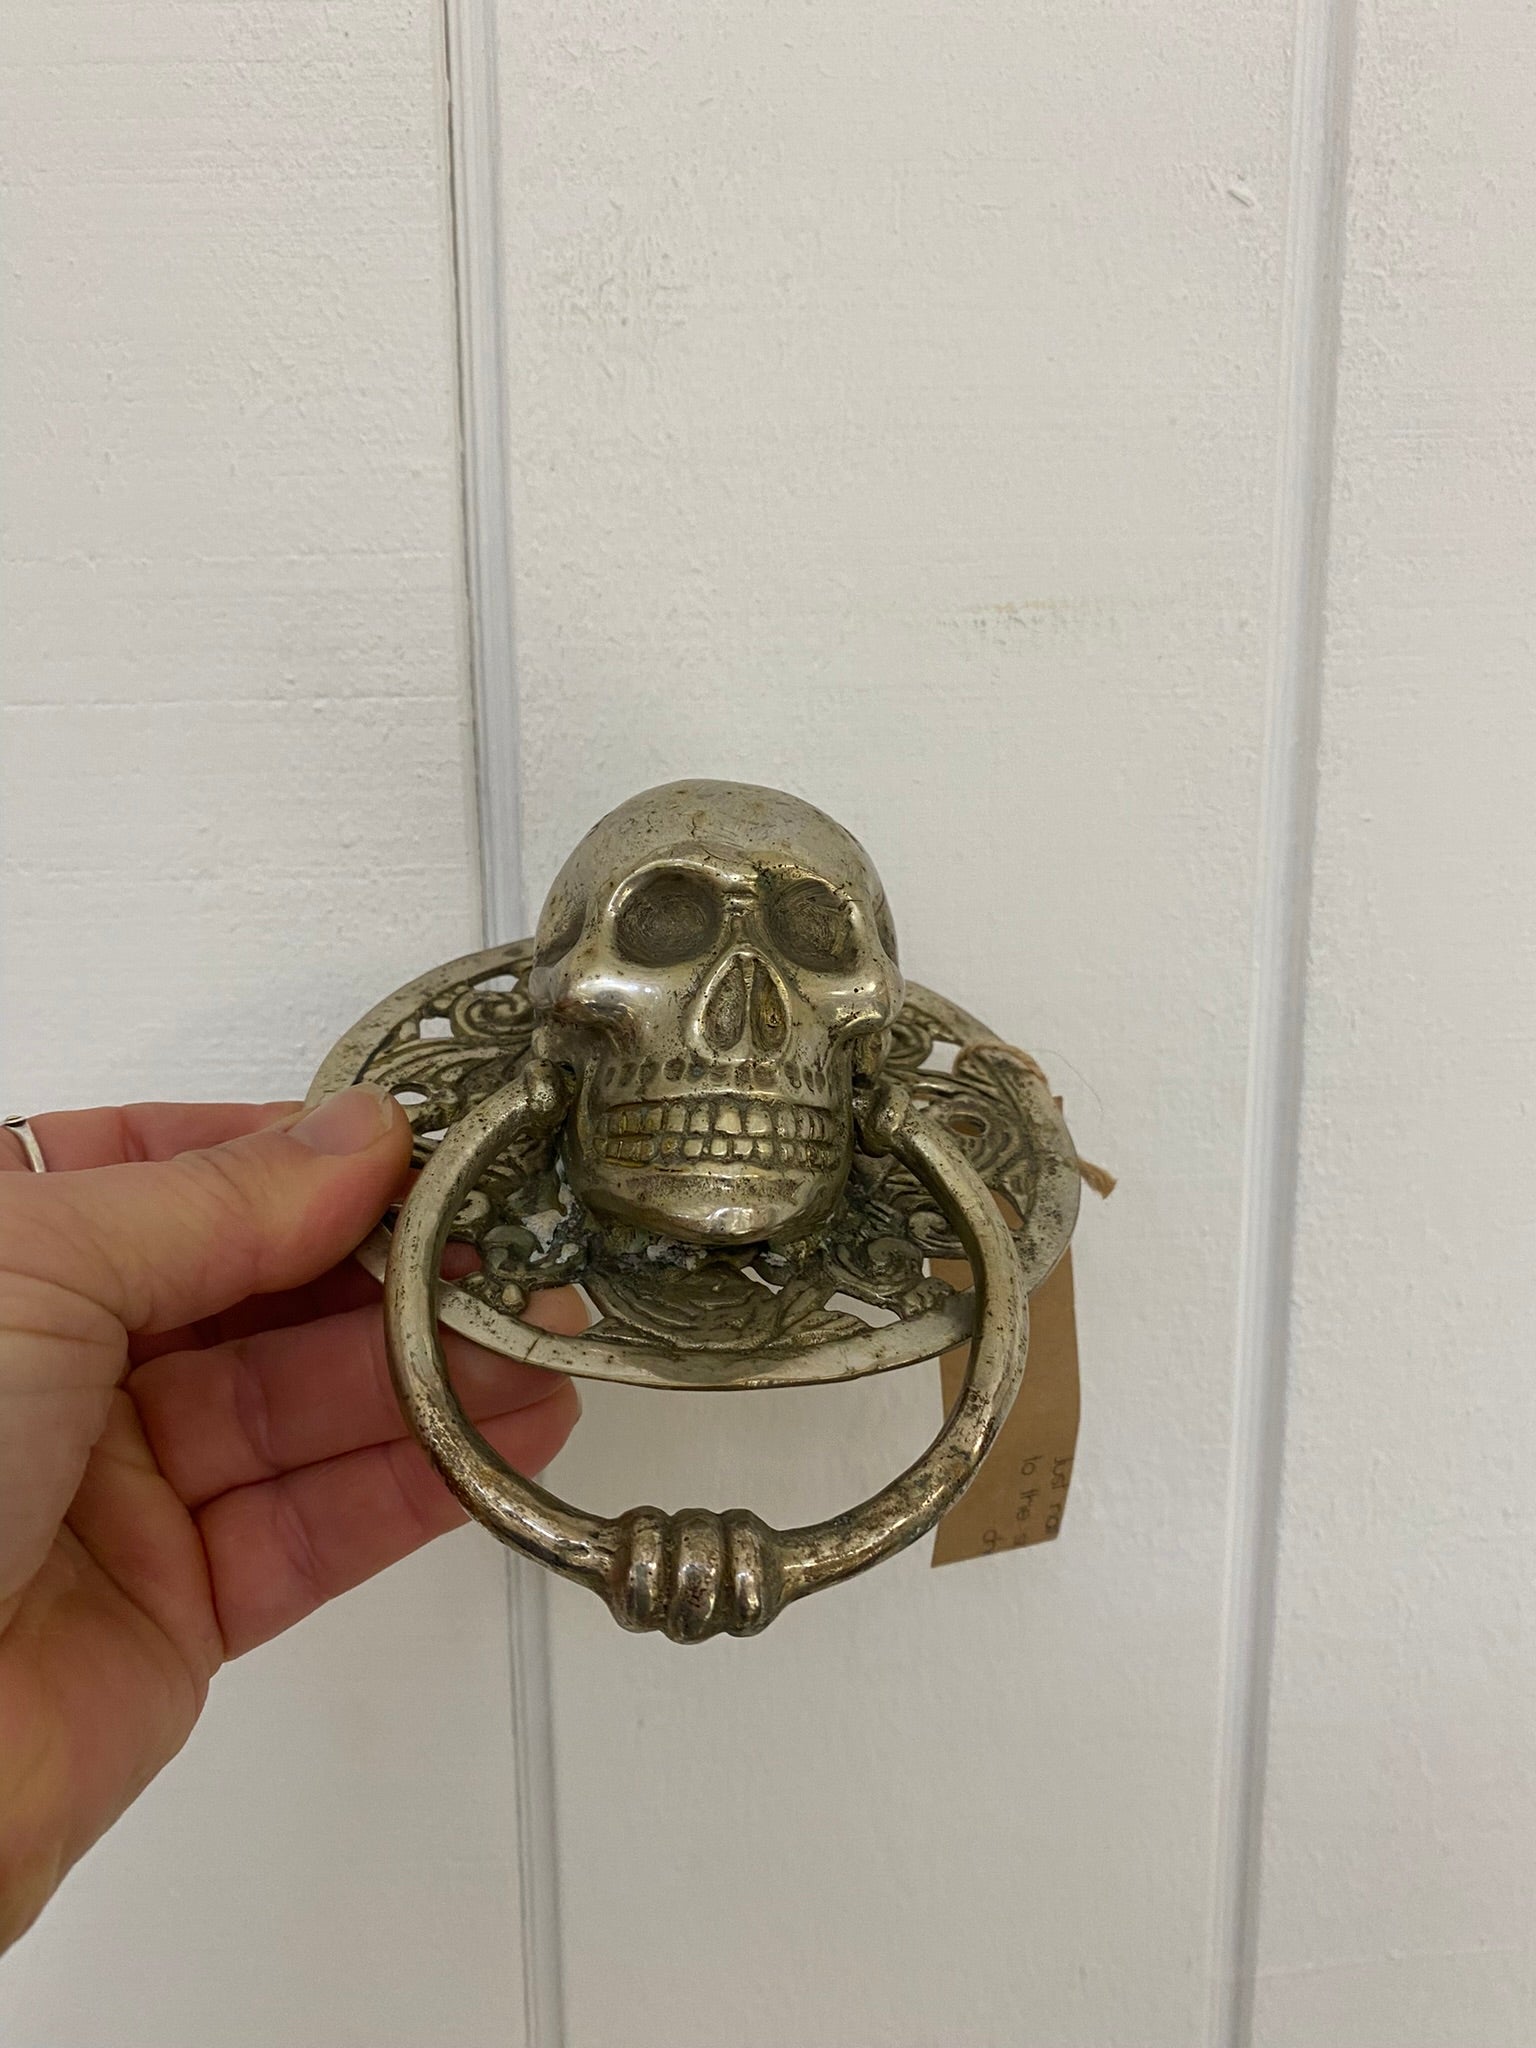 Large Skull Door Knocker